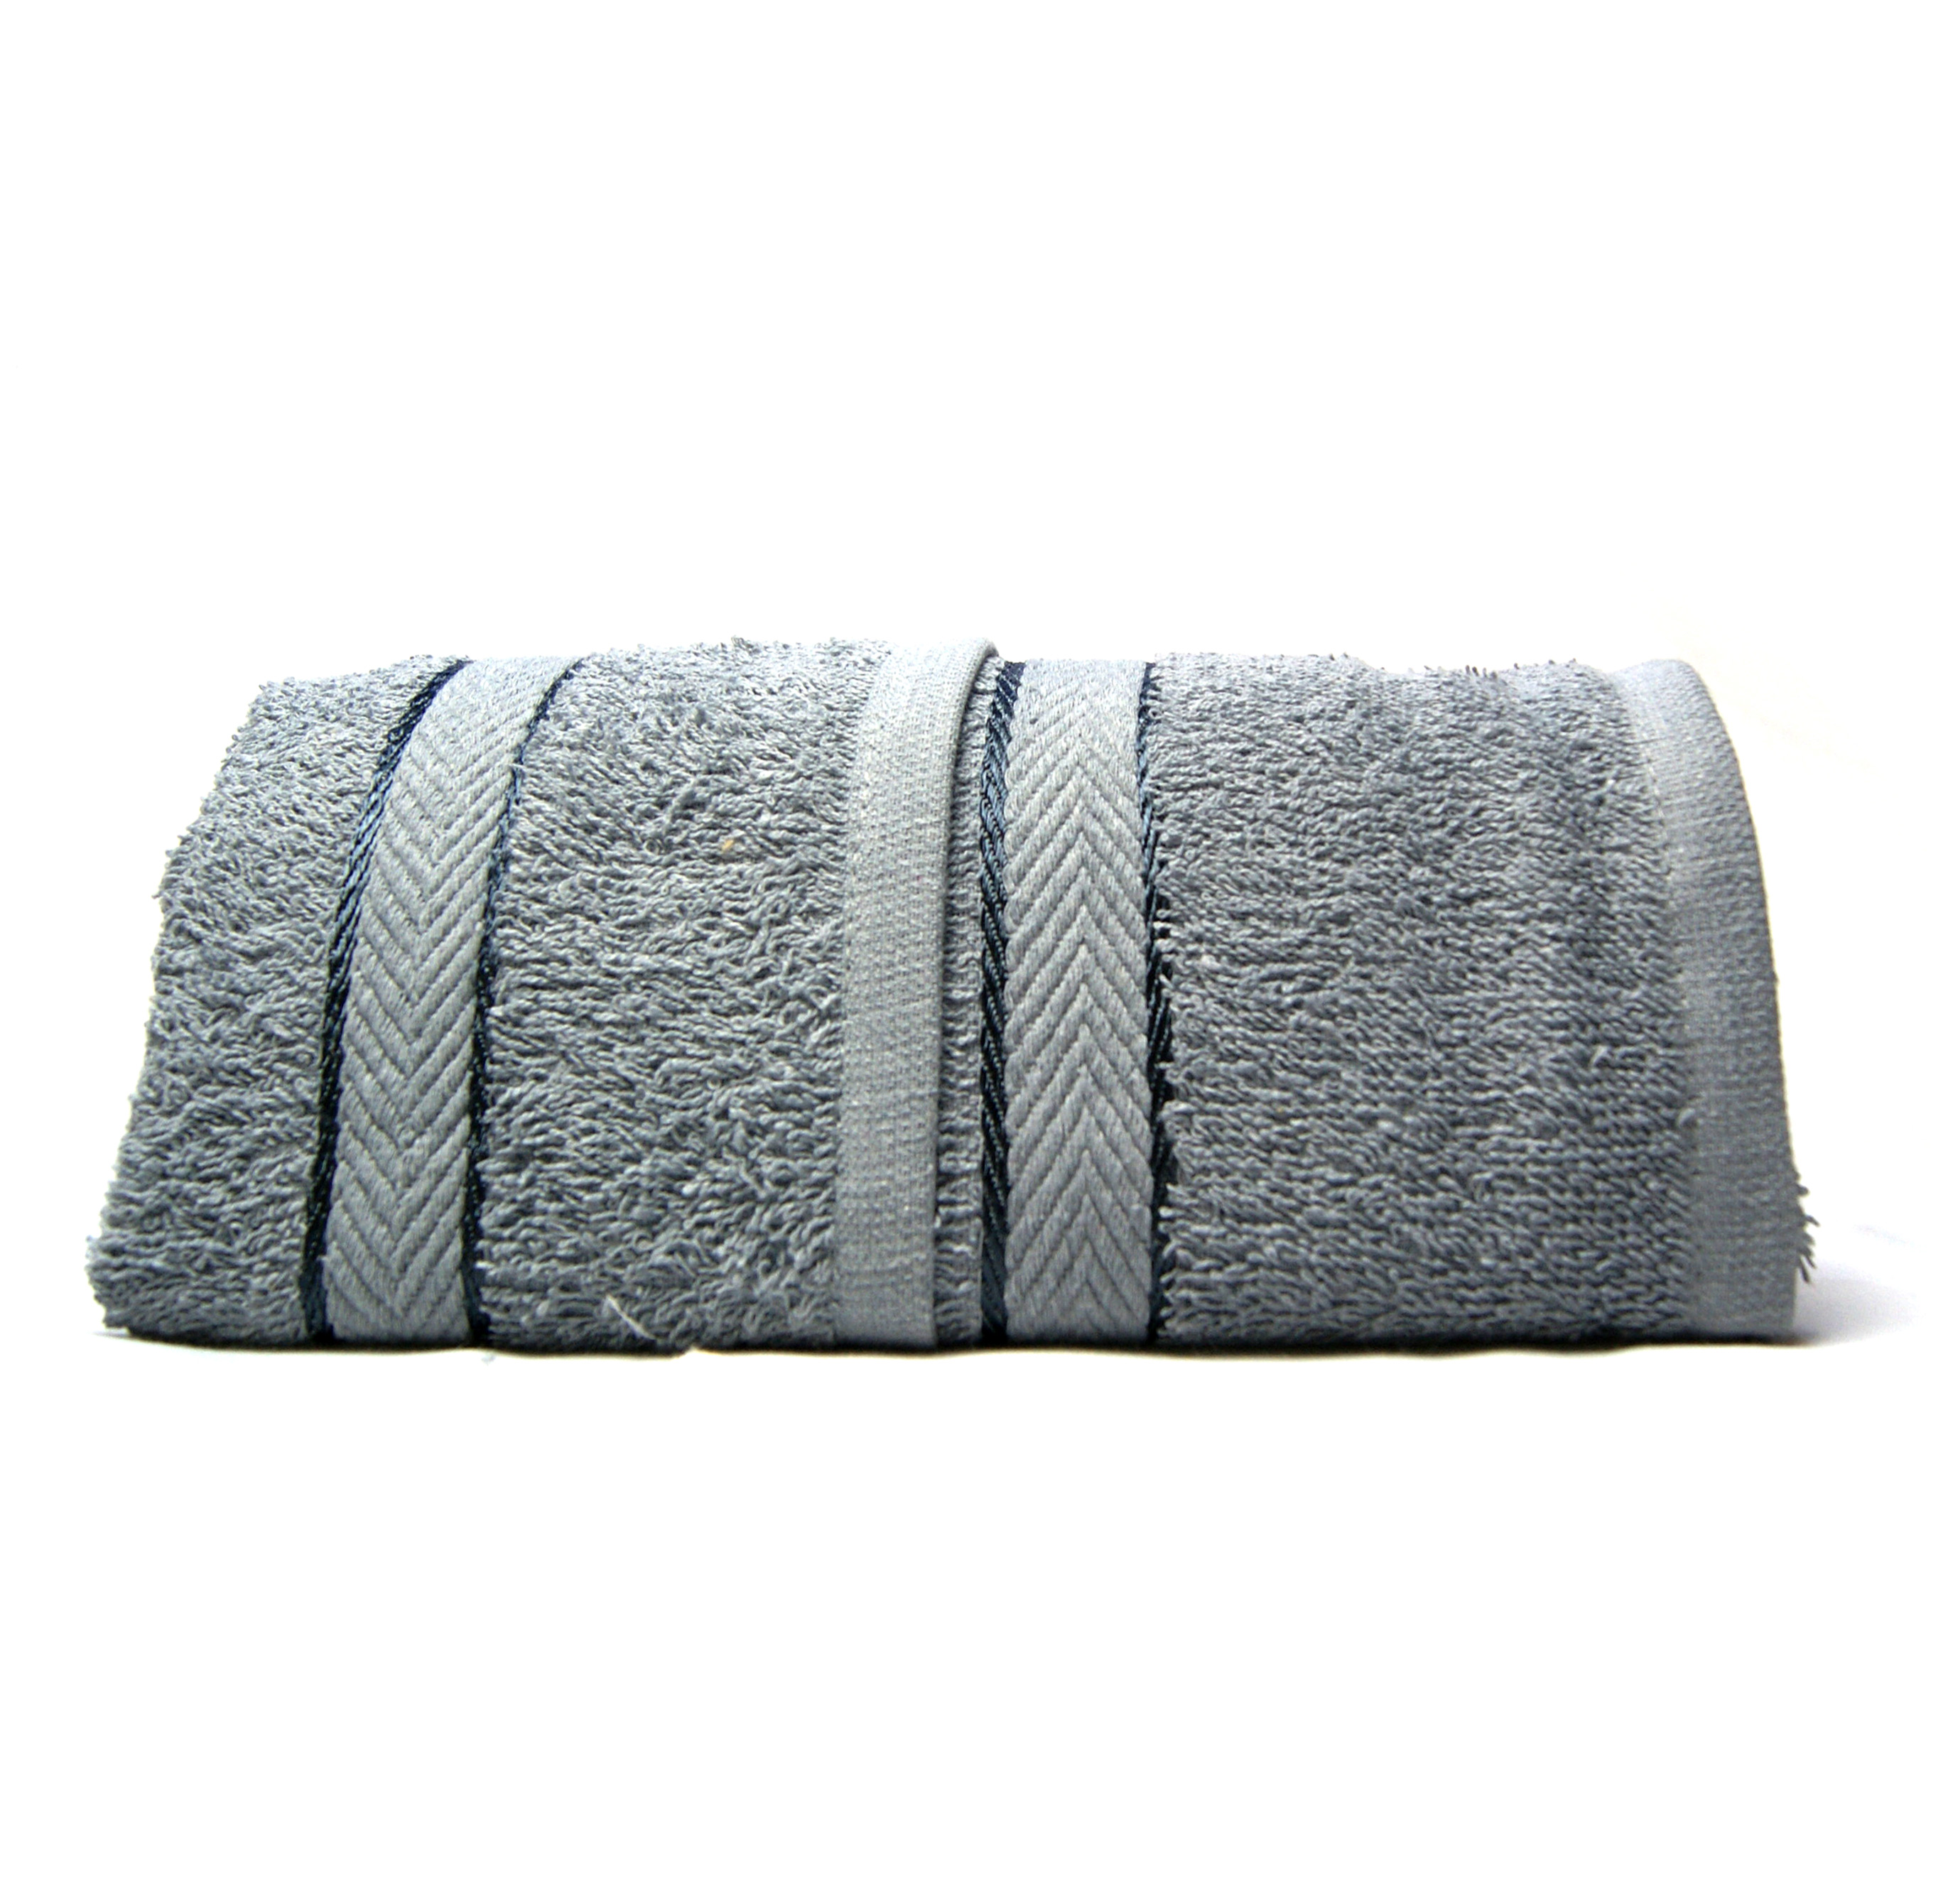 Asciugamani bagno spugna cotone offerte esclusive completo 6 pezzi: 3 grandi+3  ospiti. Colore grigio – Piliero